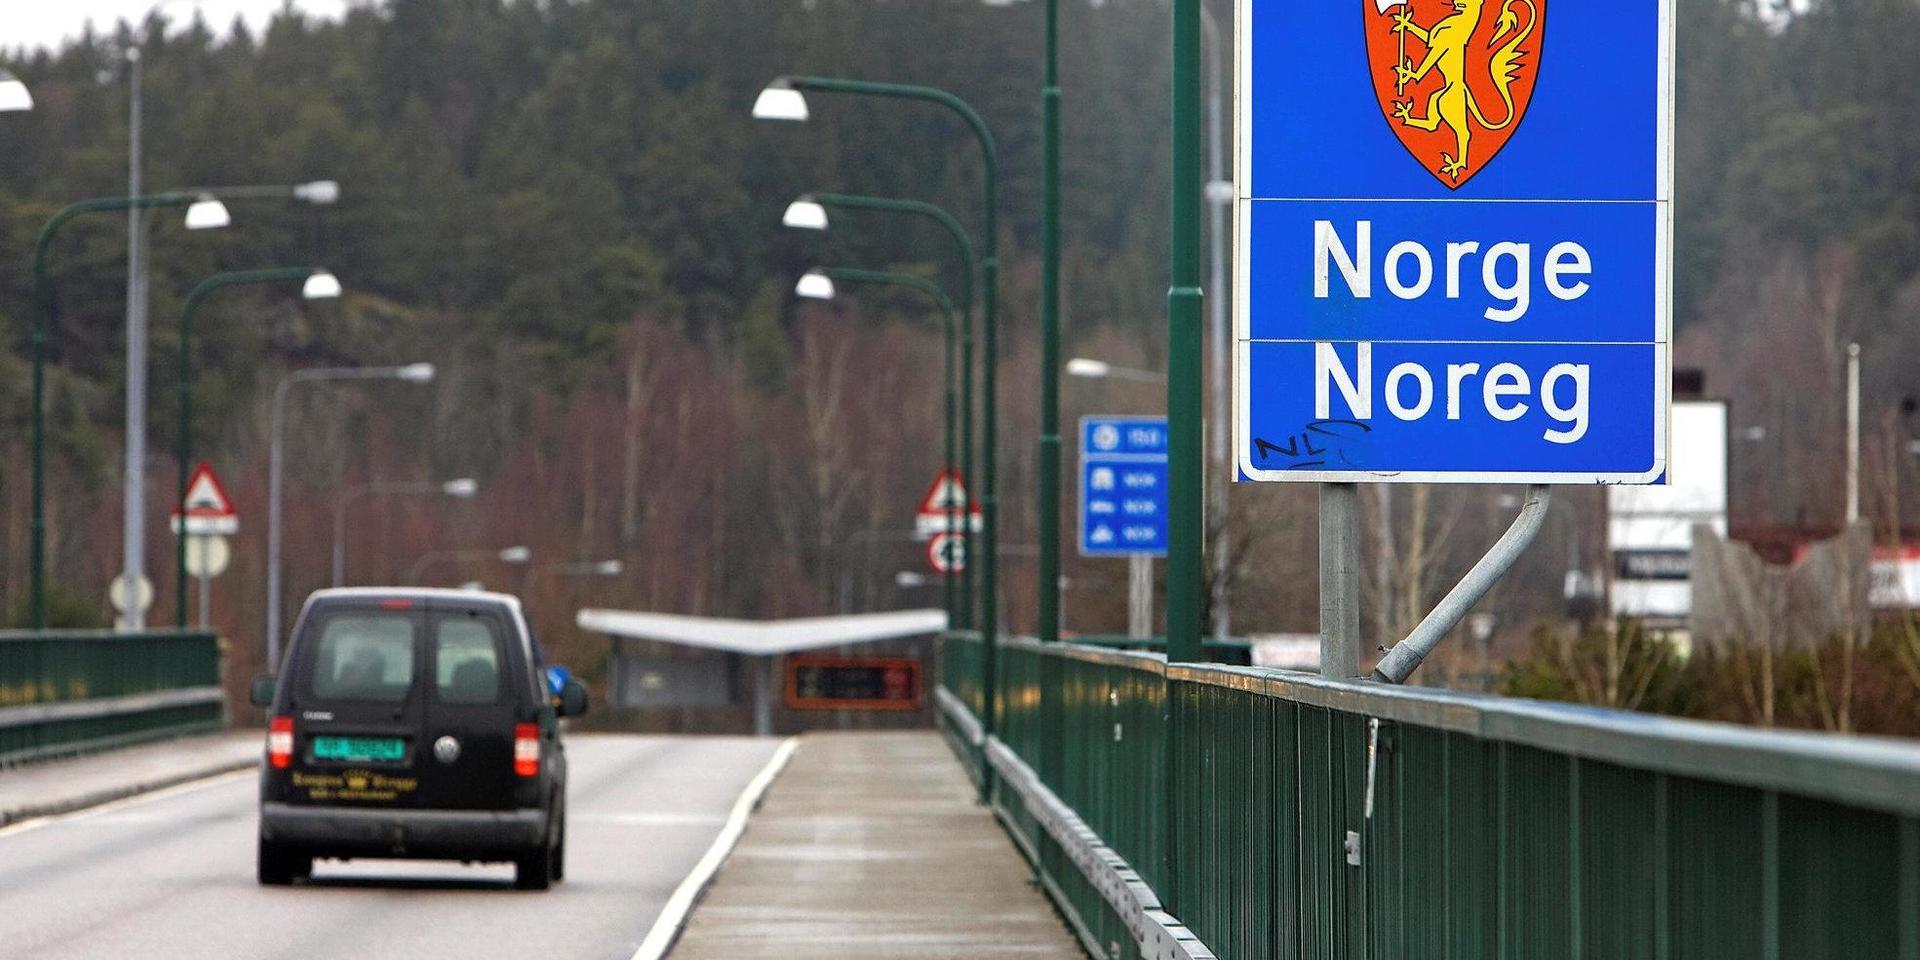 Torups- och Halmstadsparet stoppades på den svenska sidan av Svinesundsbron och hade minst en kvarts miljon i norska kronor i bilen. Men de kunde inte styrka var kontanterna hämtats ifrån.